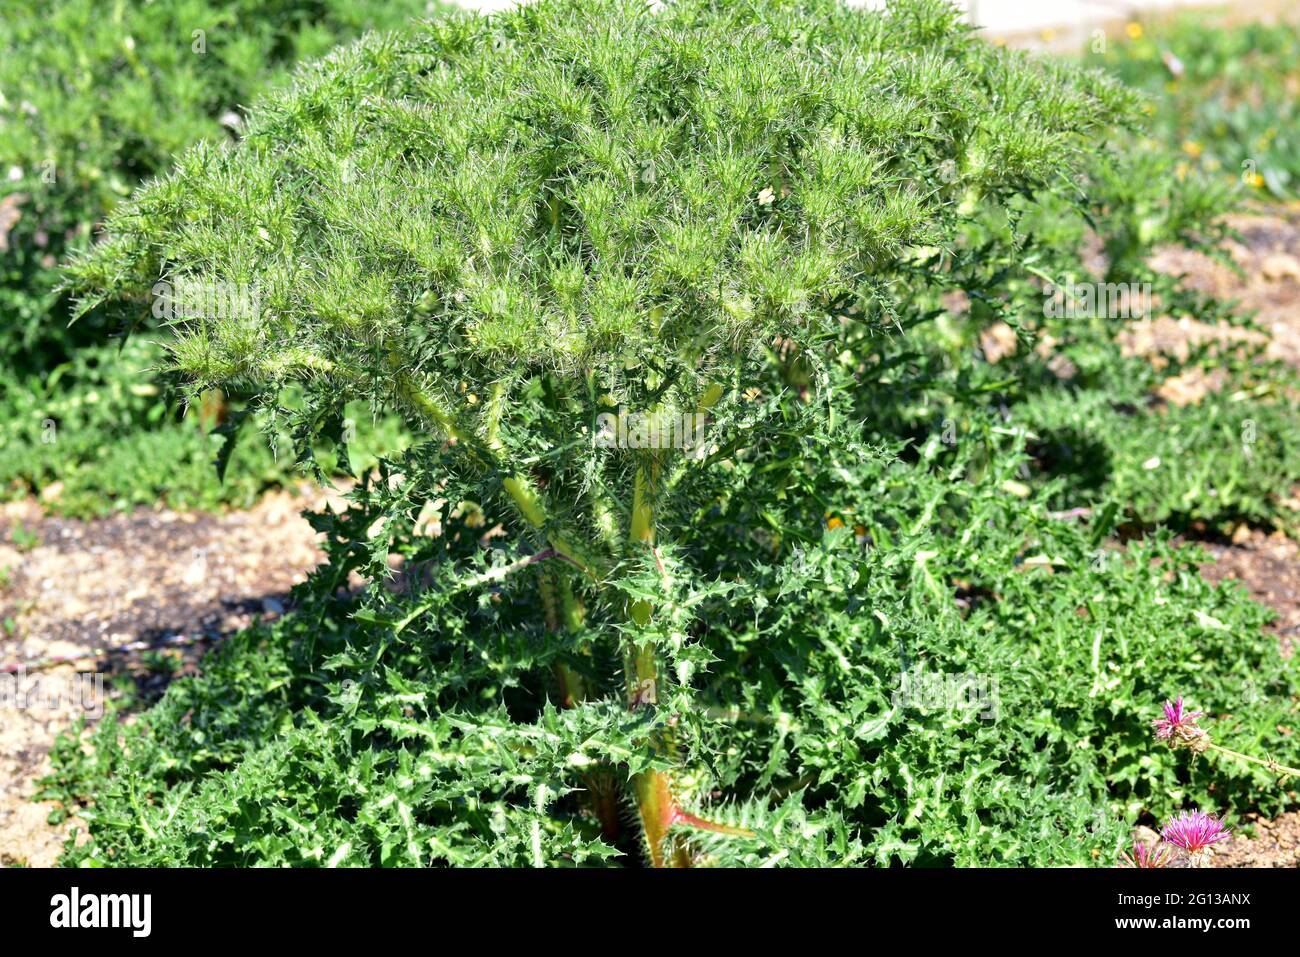 Cardiopatium corymbosum ist eine stachelige mehrjährige Pflanze, die im östlichen Mittelmeerraum beheimatet ist. Stockfoto